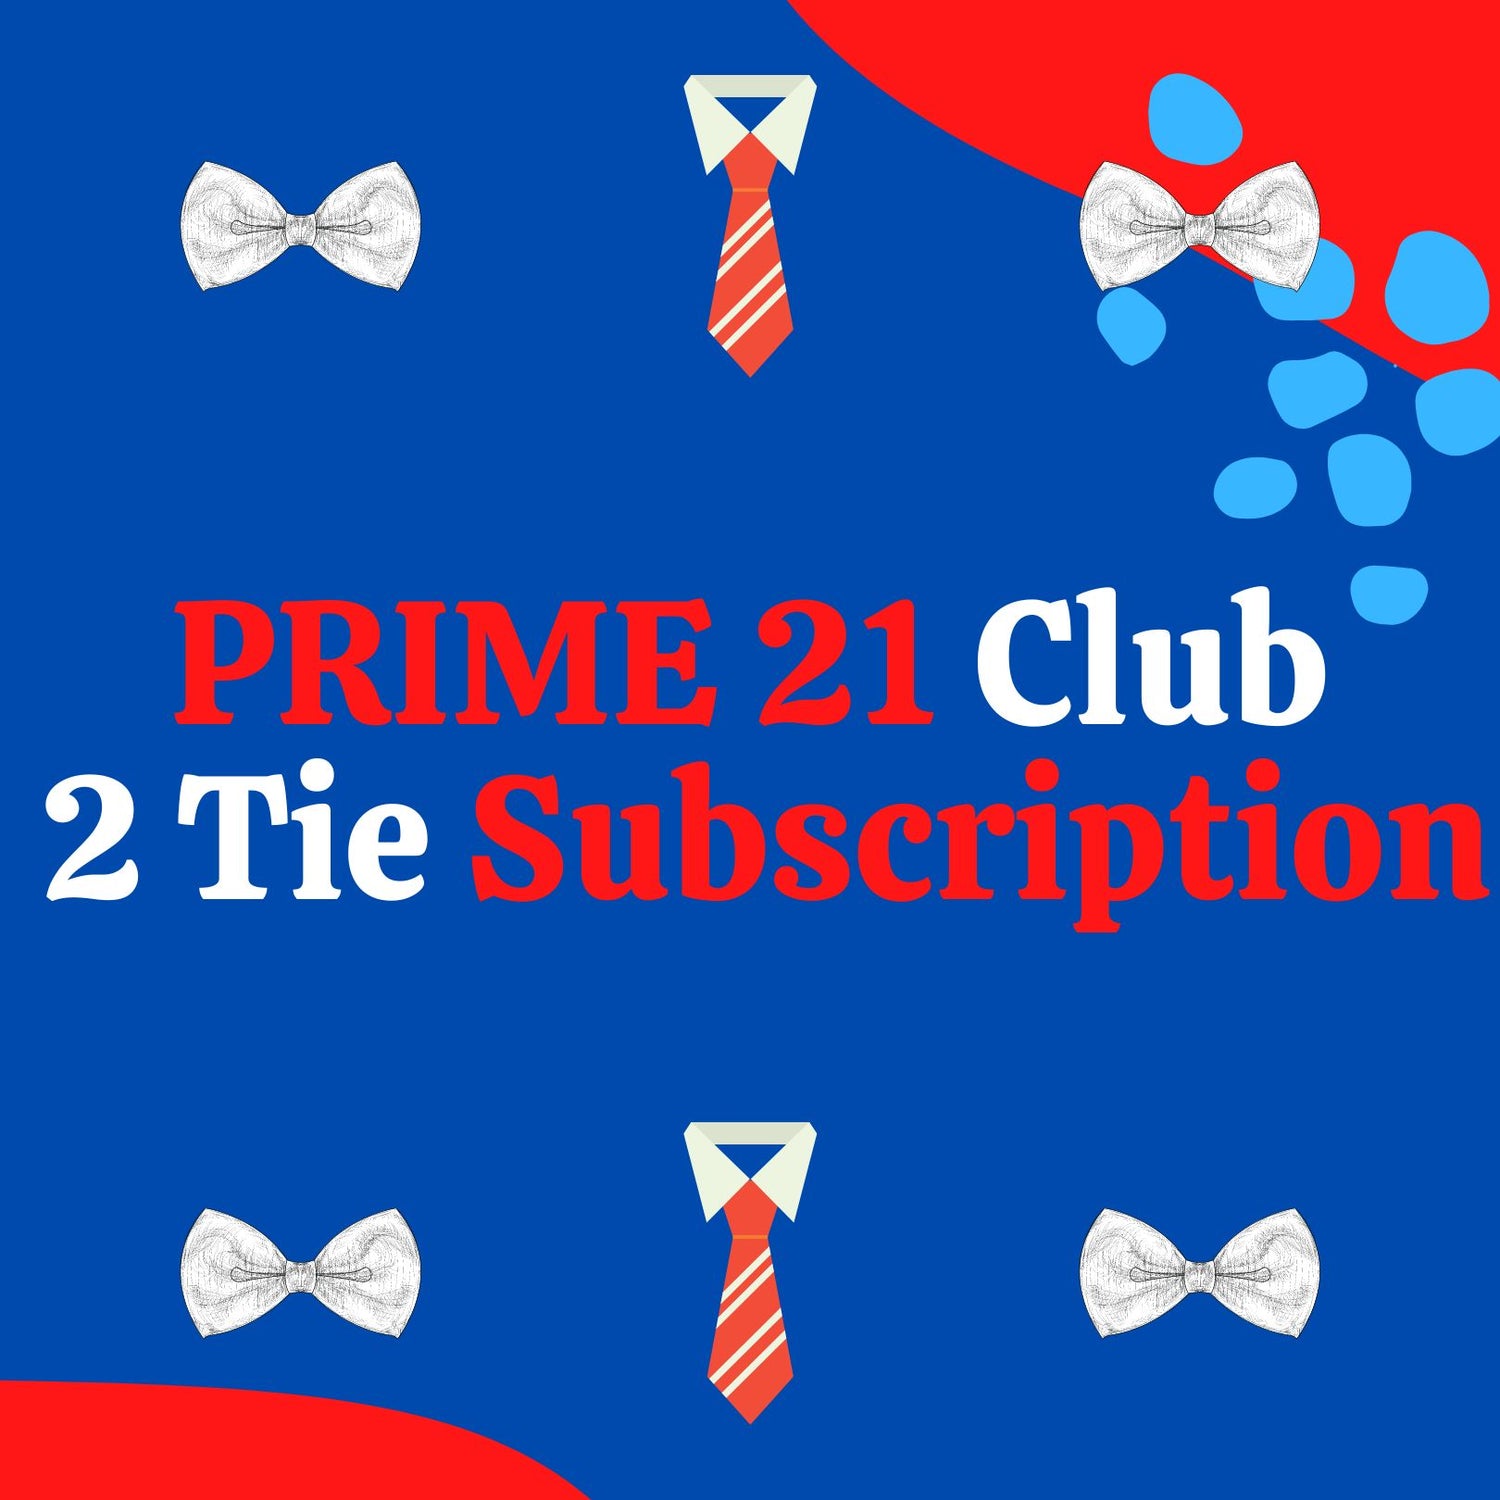 2 Tie Subscription